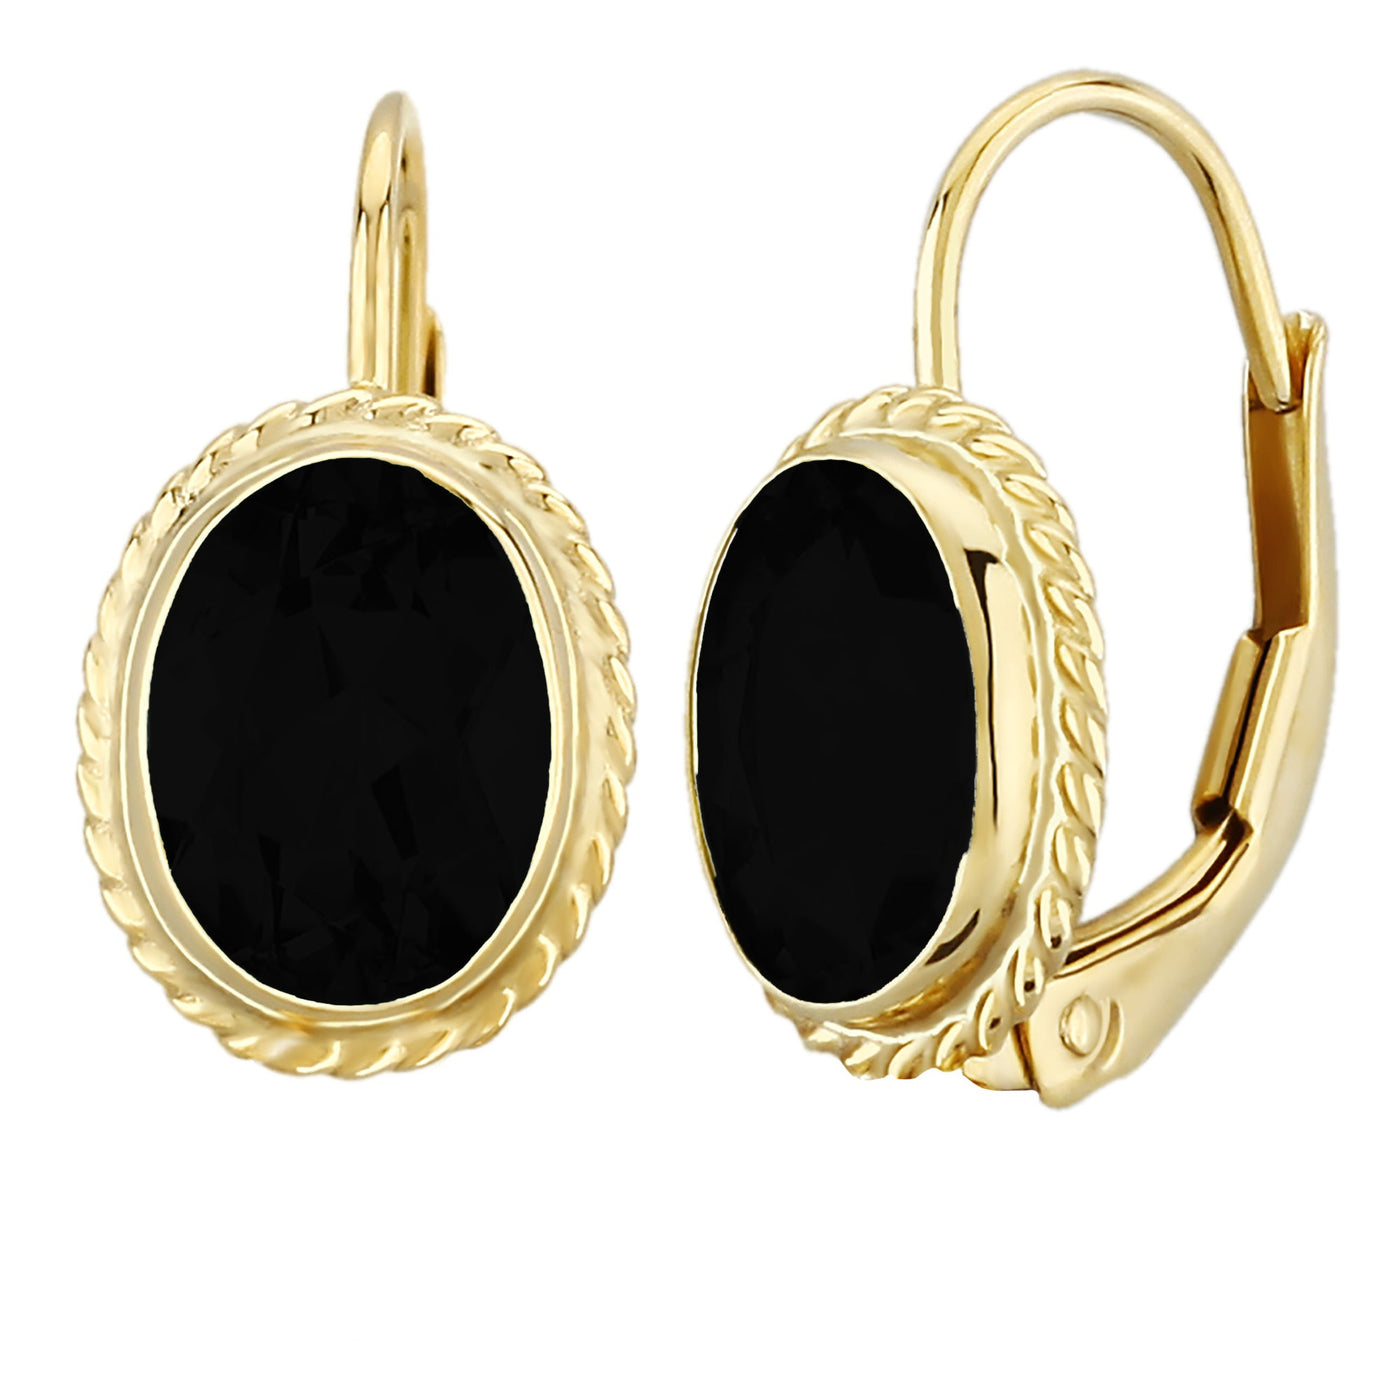 Black Onyz Oval Lever Back Earrings